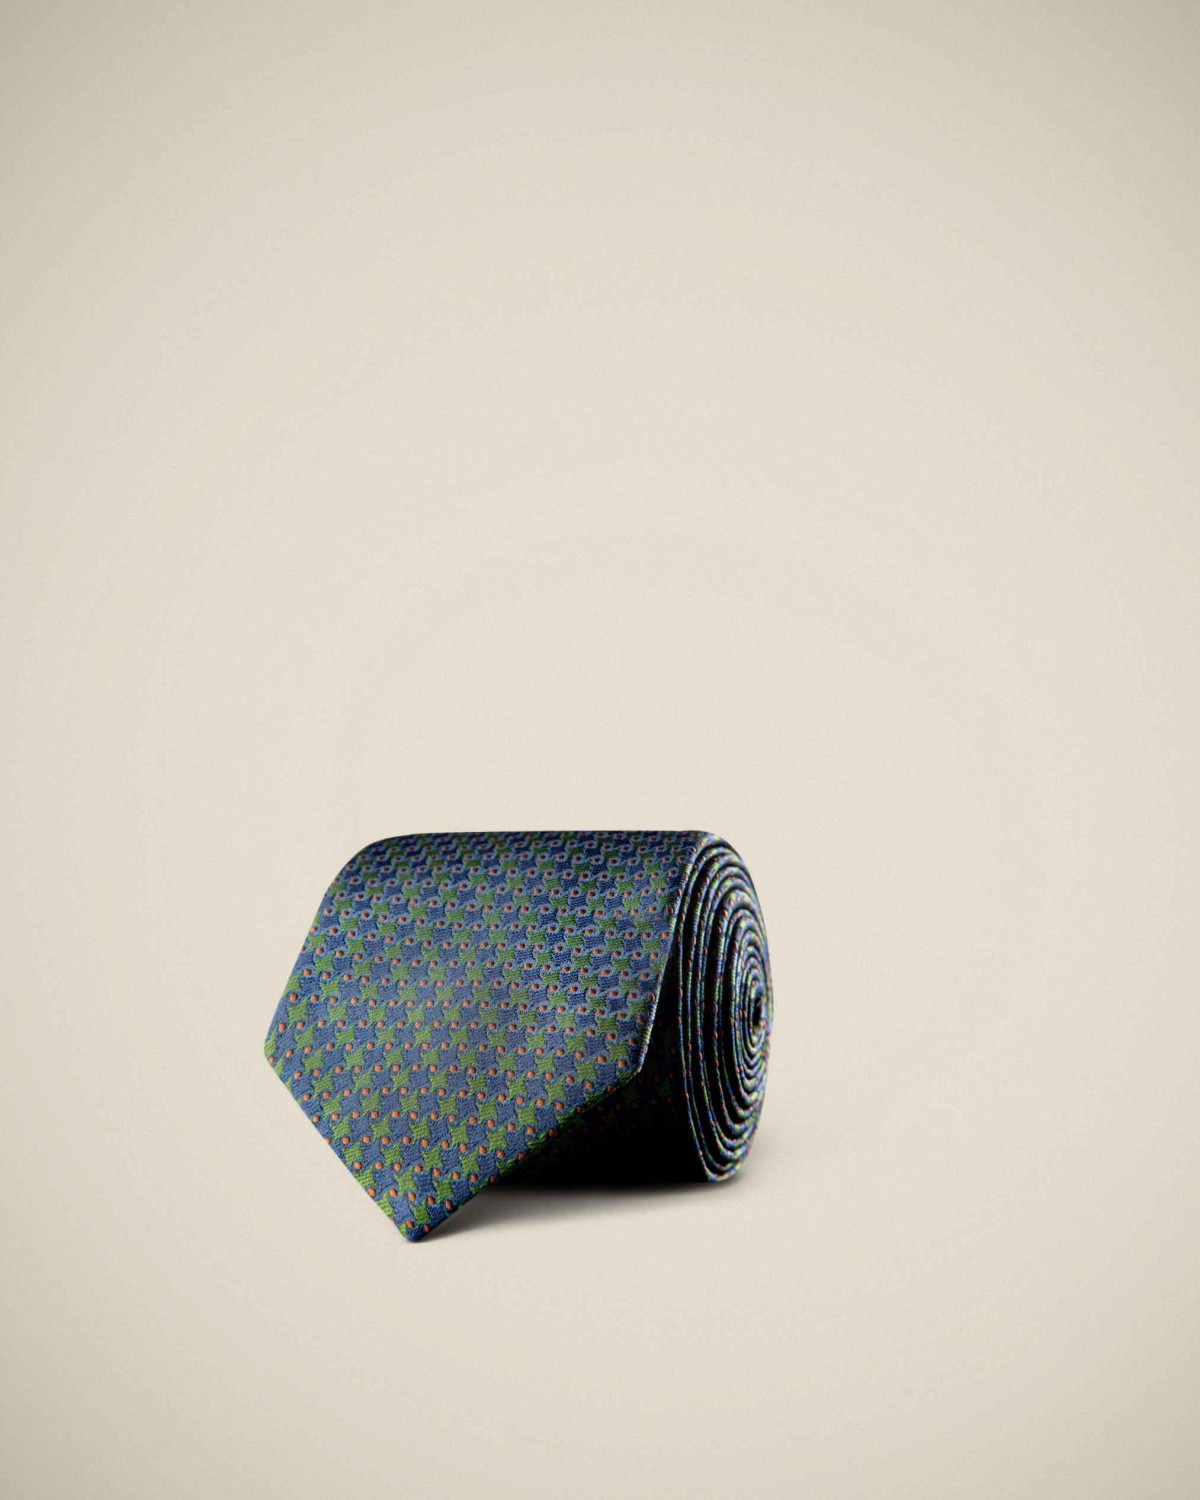 ست کراوات و پوشت 88